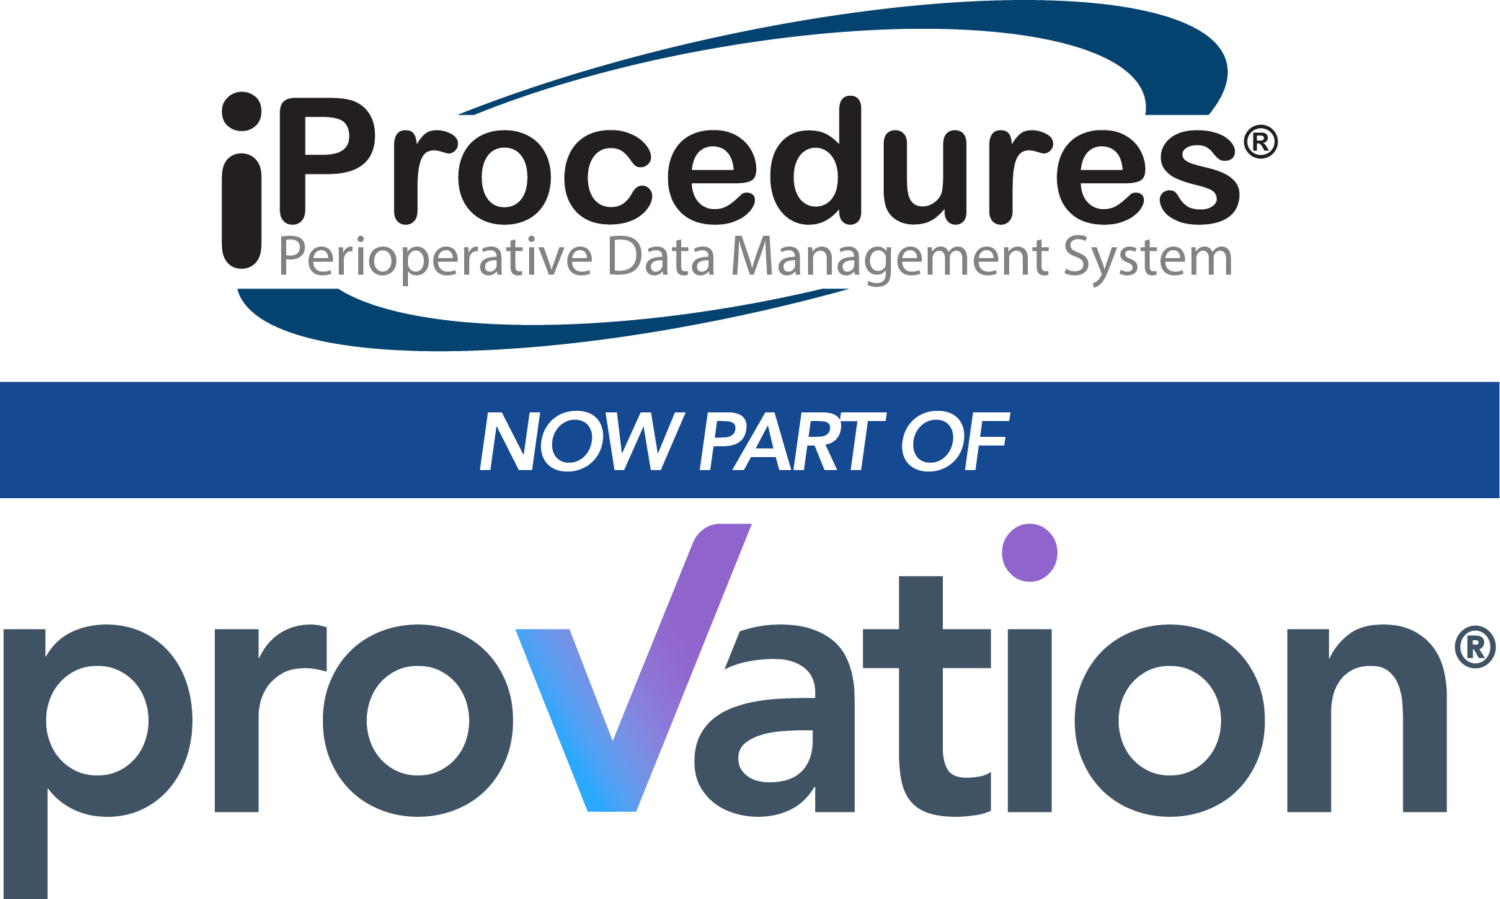 Provation Acquires Perioperative Data Management Platform iProcedures